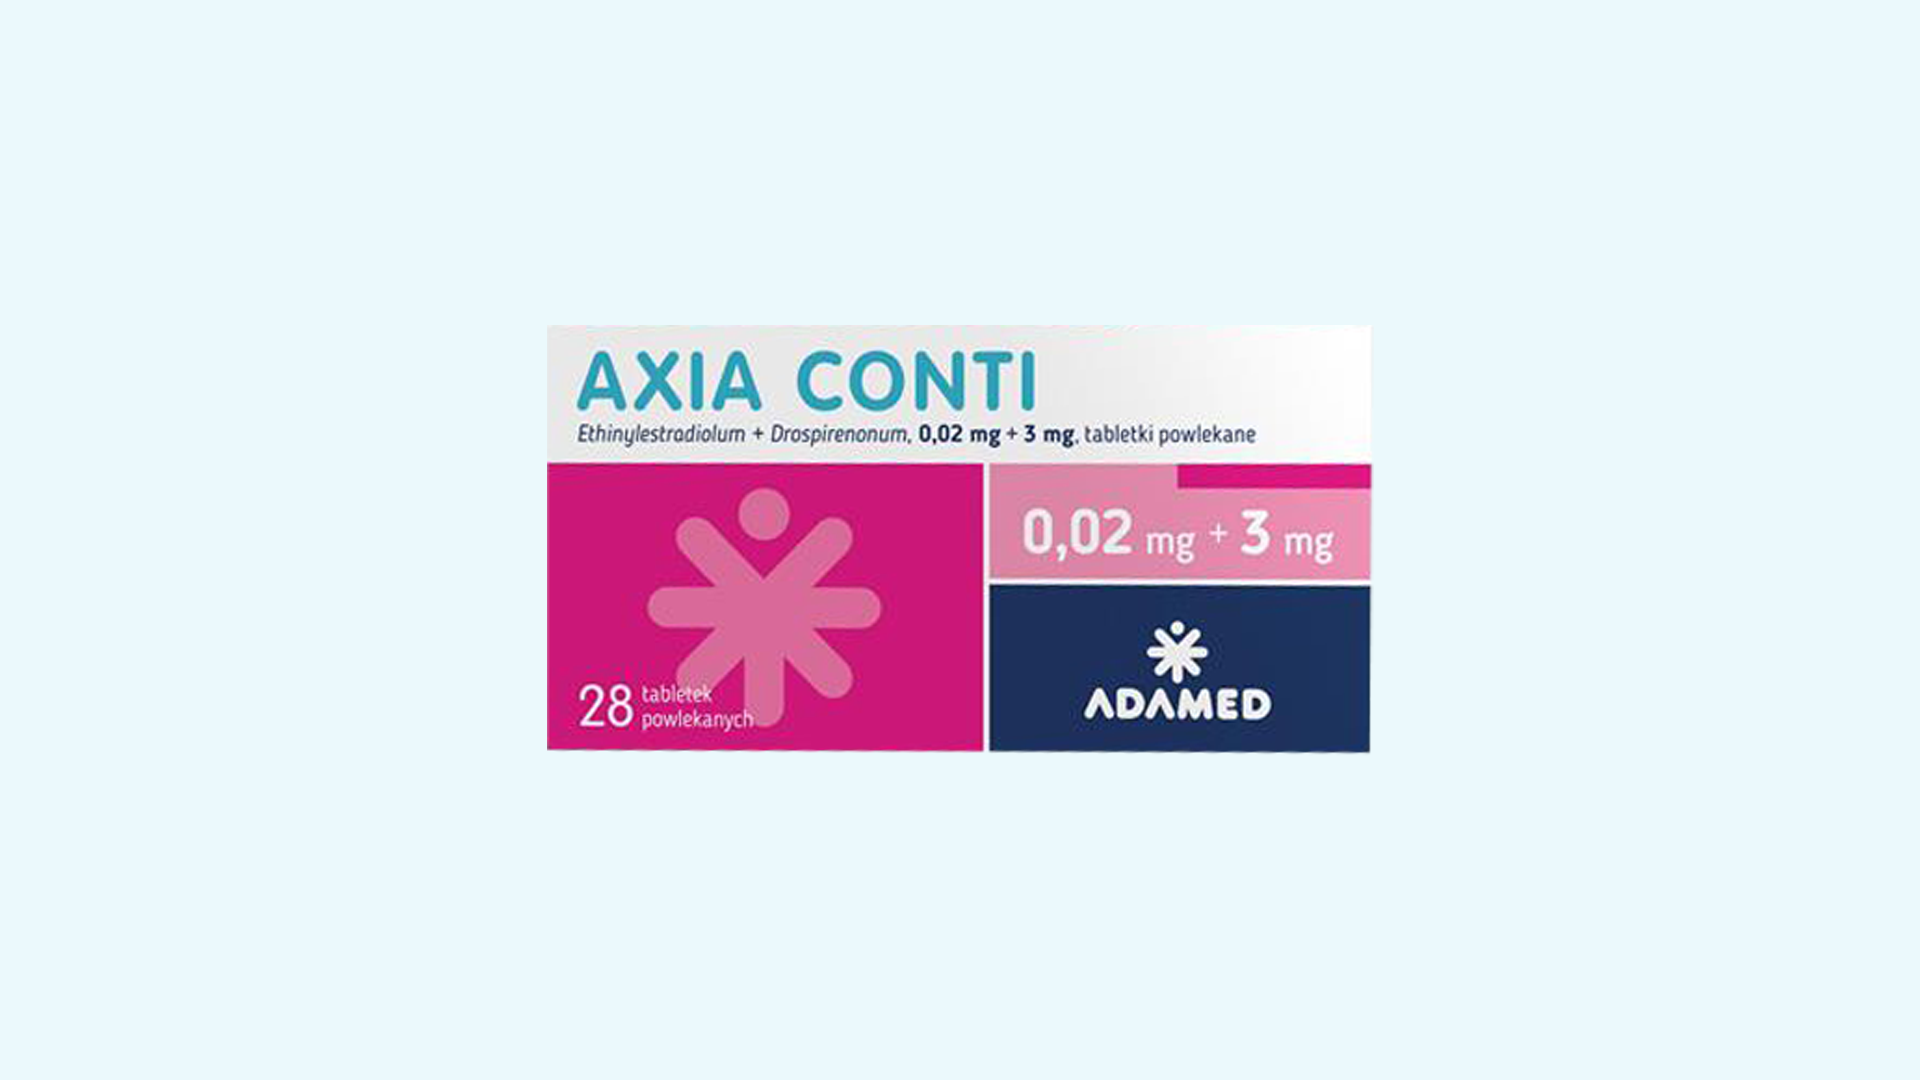 Axia Conti – informacje o leku, dawkowanie oraz przeciwwskazania